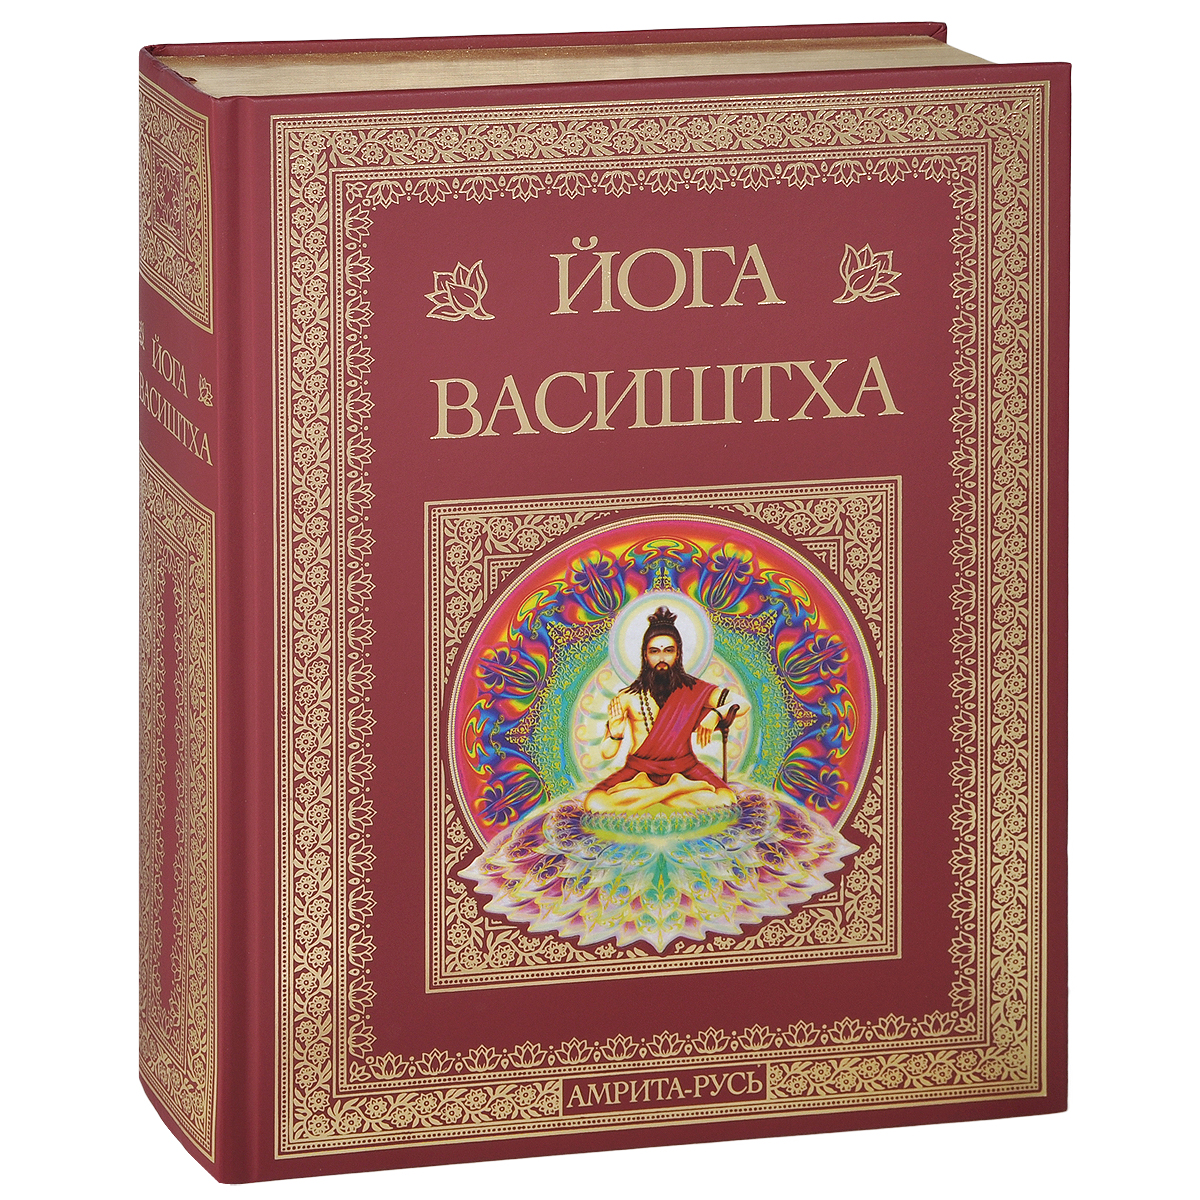 Йога Васиштха. Практическая философия йоги и Веданты (подарочное издание)